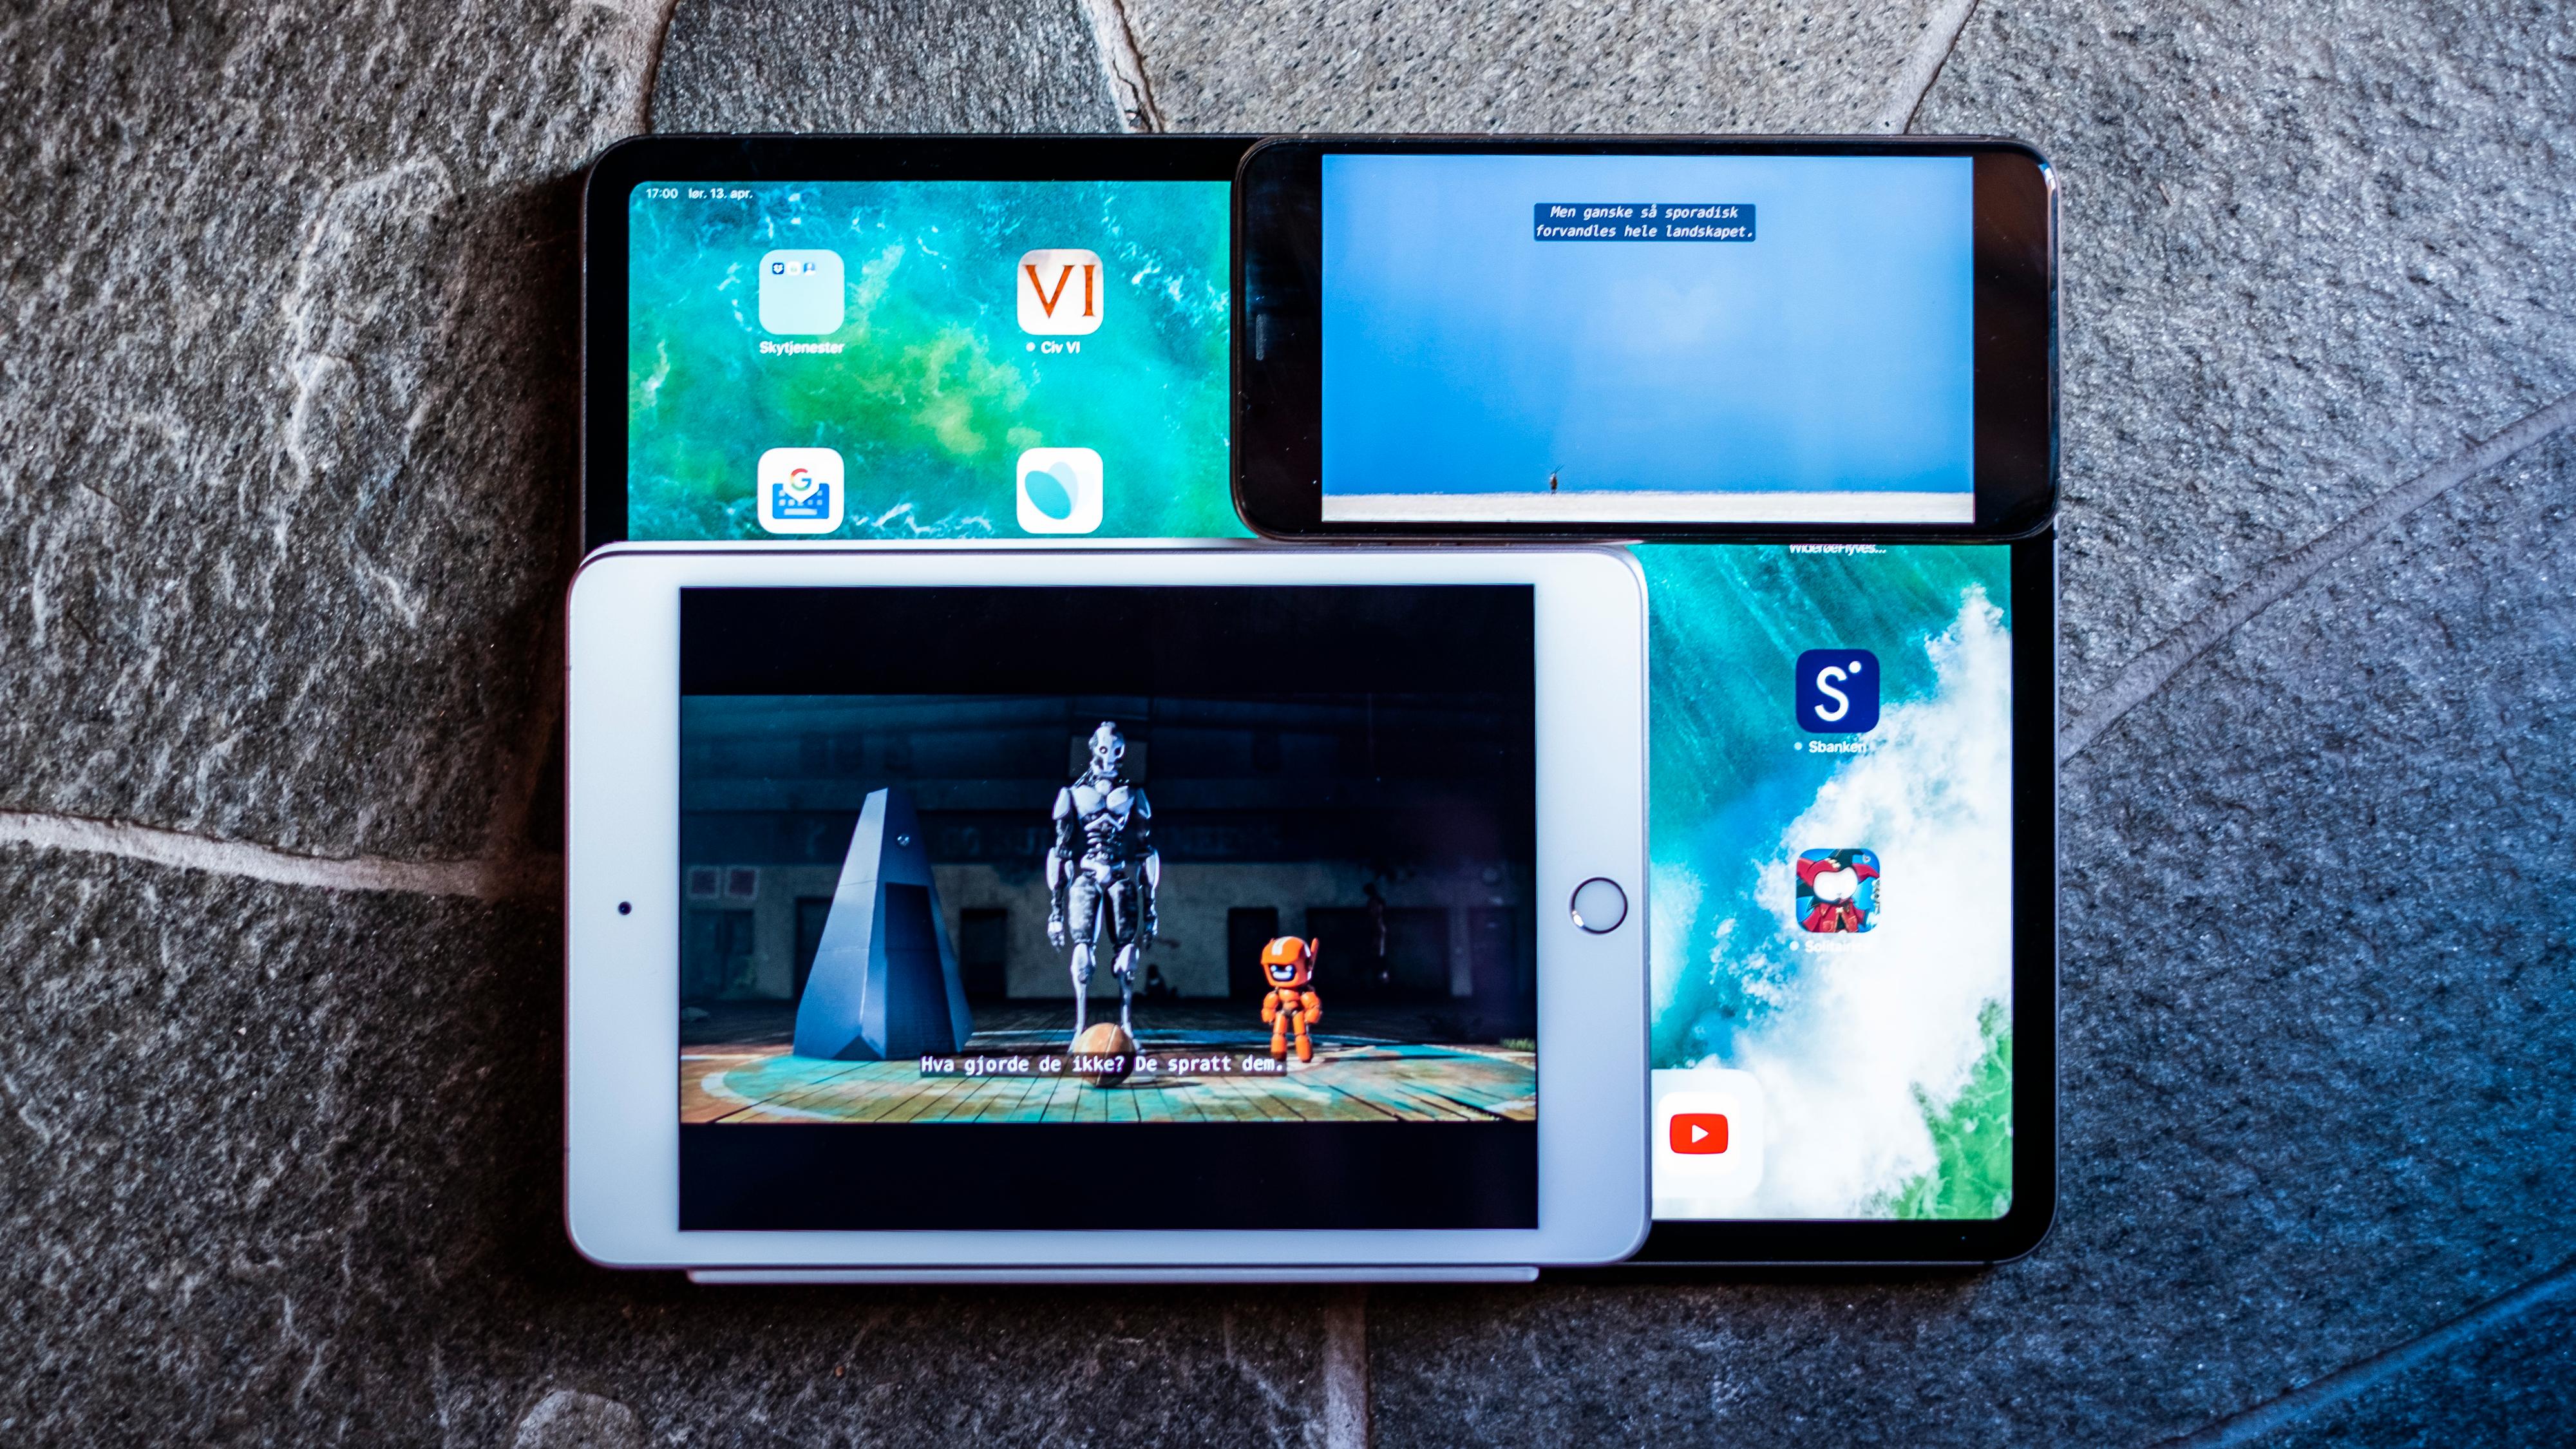 iPad Mini og iPhone Xs Max oppå iPad Pro 12,9. Du vinner både vesentlig større filmbilde enn på iPhone og langt mer praktisk formfaktor enn de største iPadene med iPad Mini. Og bruker du den til ting som ikke forutsetter spesielt brede skjermer får du mye ekstra plass å boltre deg på sammenliknet med telefonen.